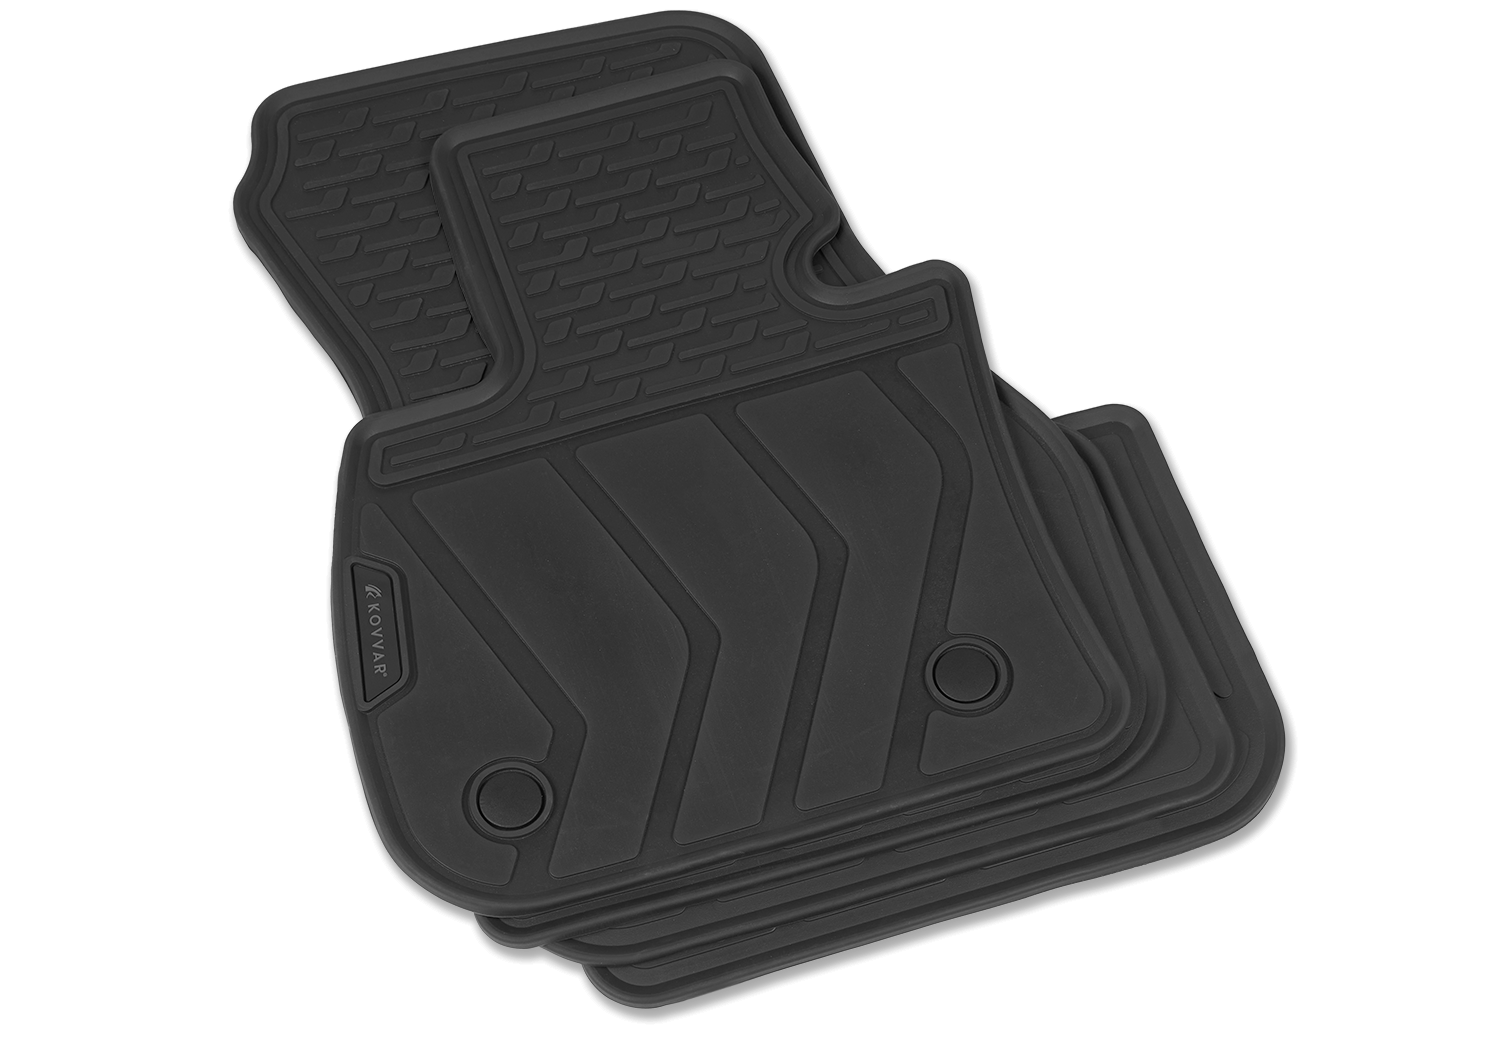 Echtheitsgarantie Gummi Fußmatten für Versand Gratis F48 | BMW X1